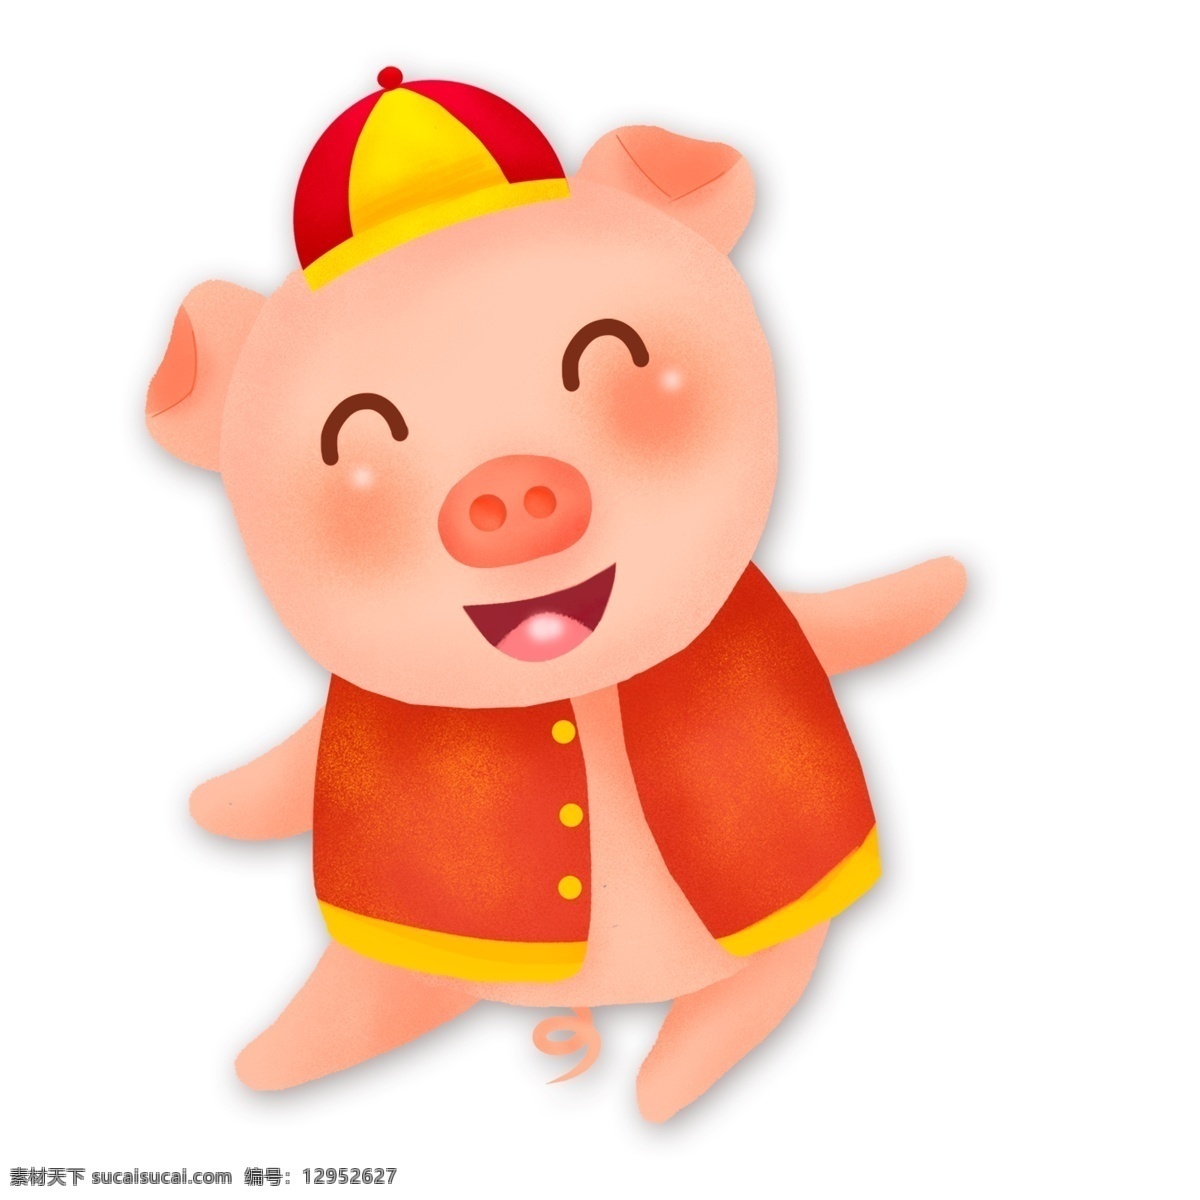 中国 风 手绘 开心 财神 小 猪 中国风 卡通 可爱 插画 小猪 猪猪形象 小猪形象